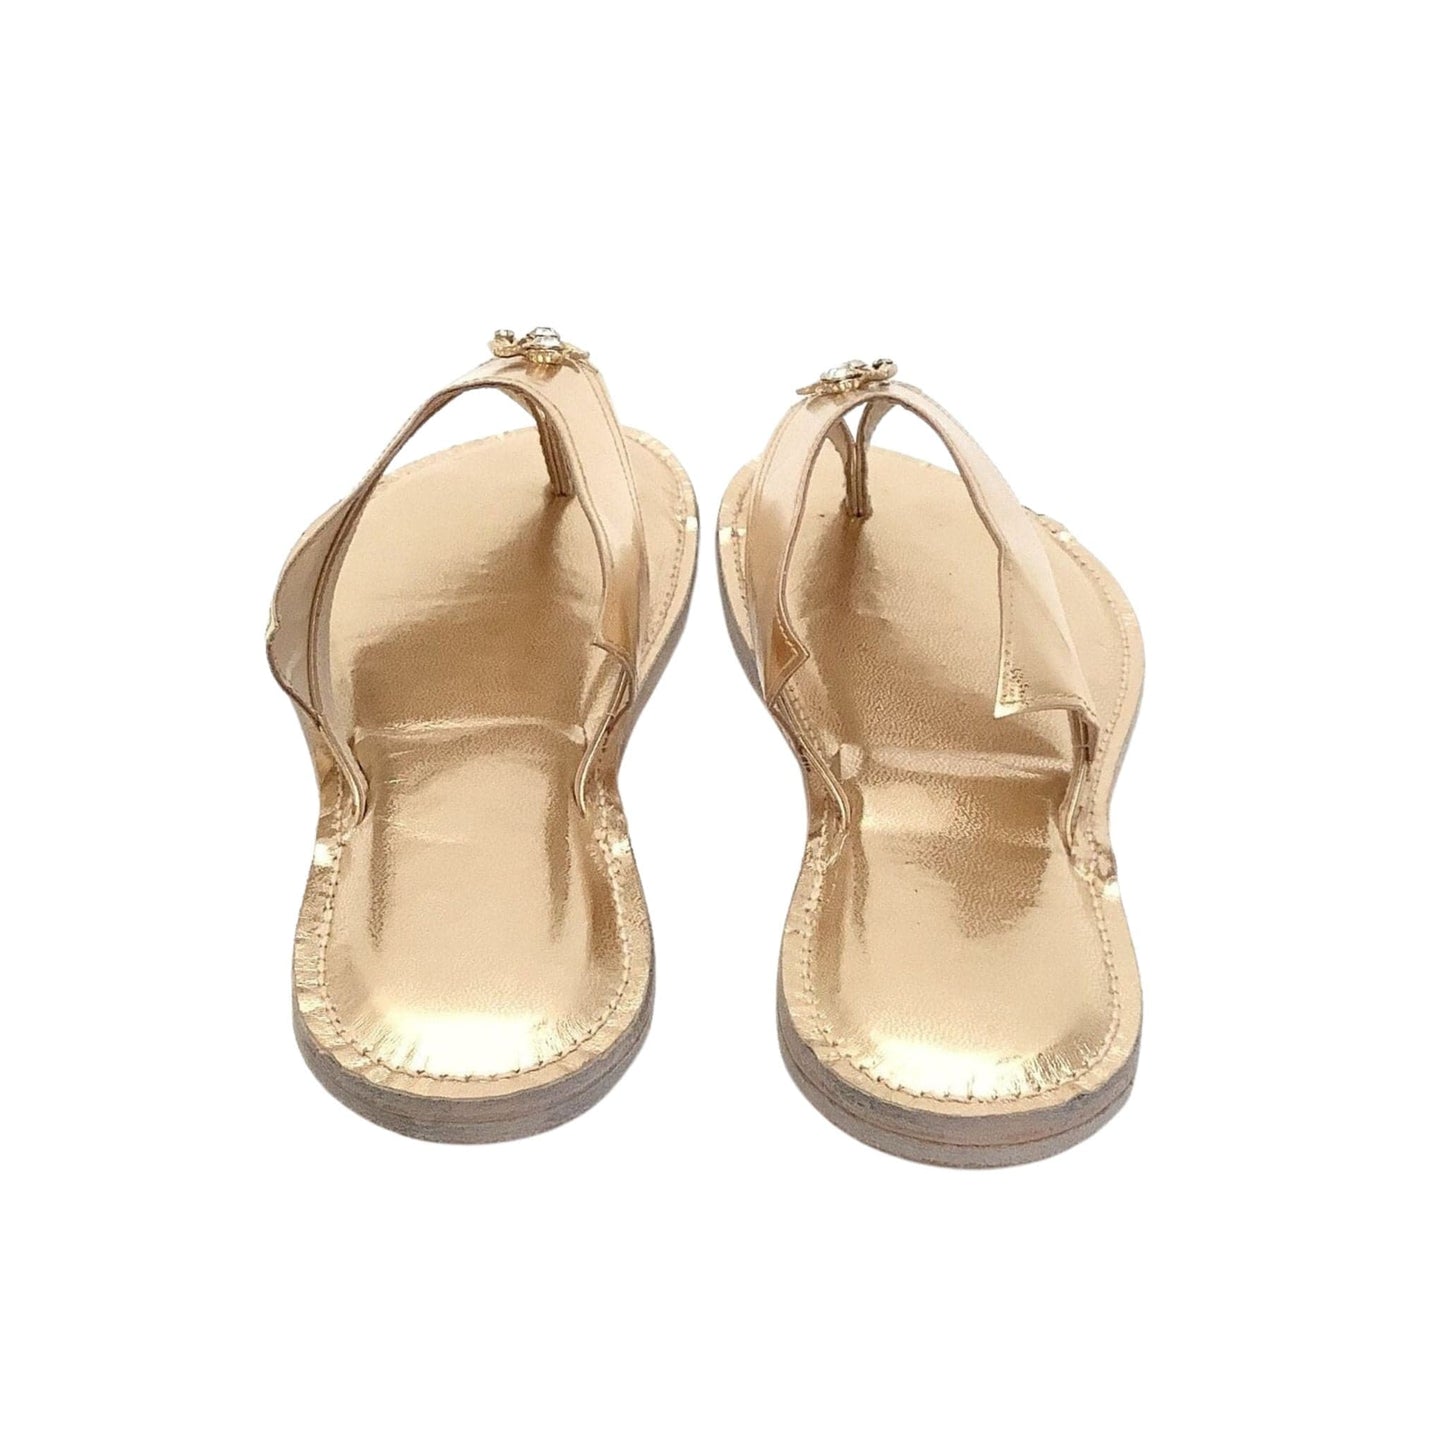 1940s Art Deco Sandals 9 / Gold / Vintage 1940s